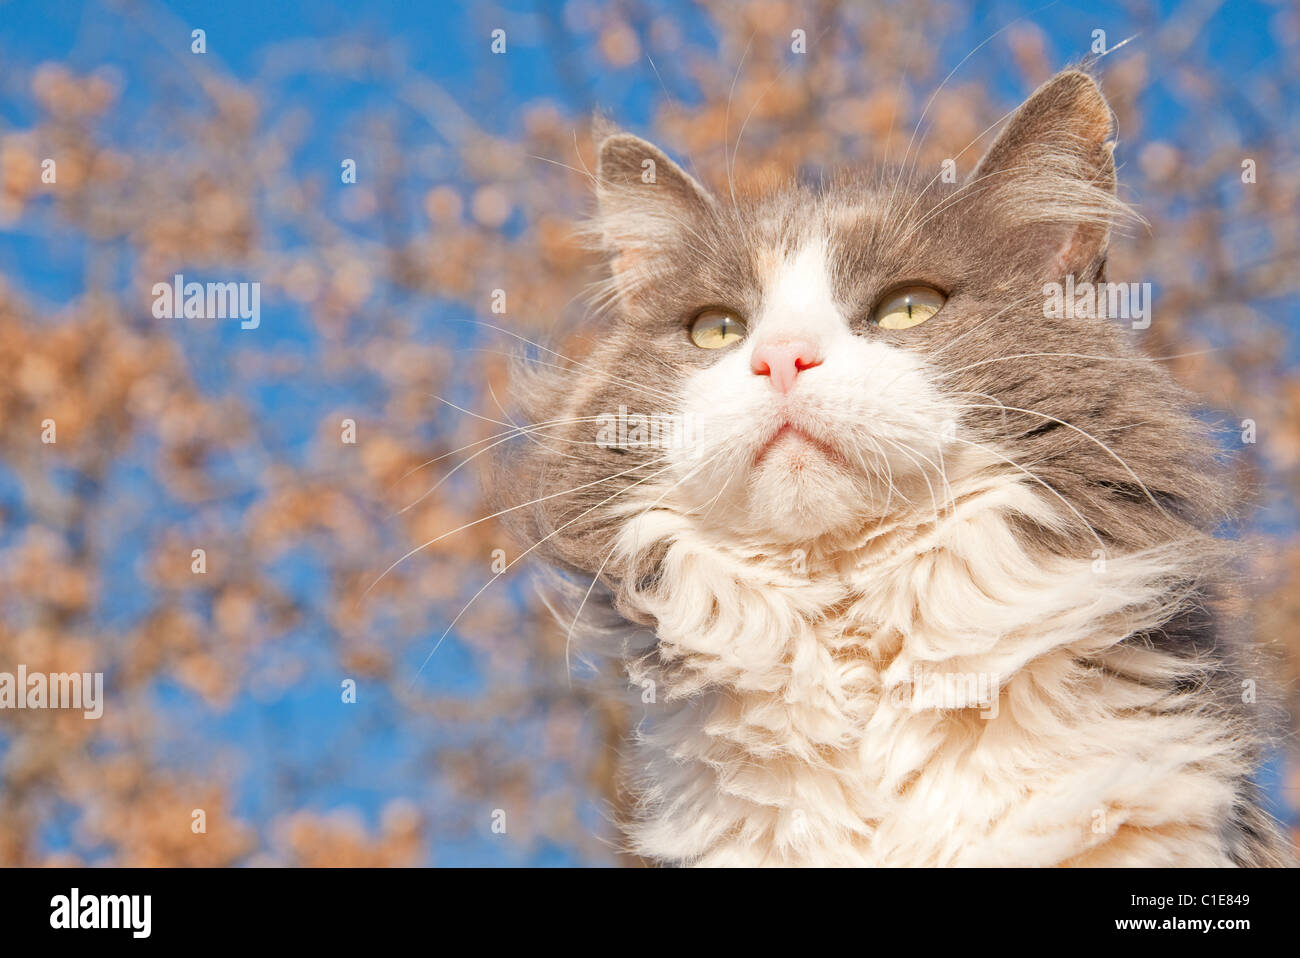 Belle aux cheveux longs chat calico dilué contre ciel bleu et un arbre avec des feuilles brun sec Banque D'Images